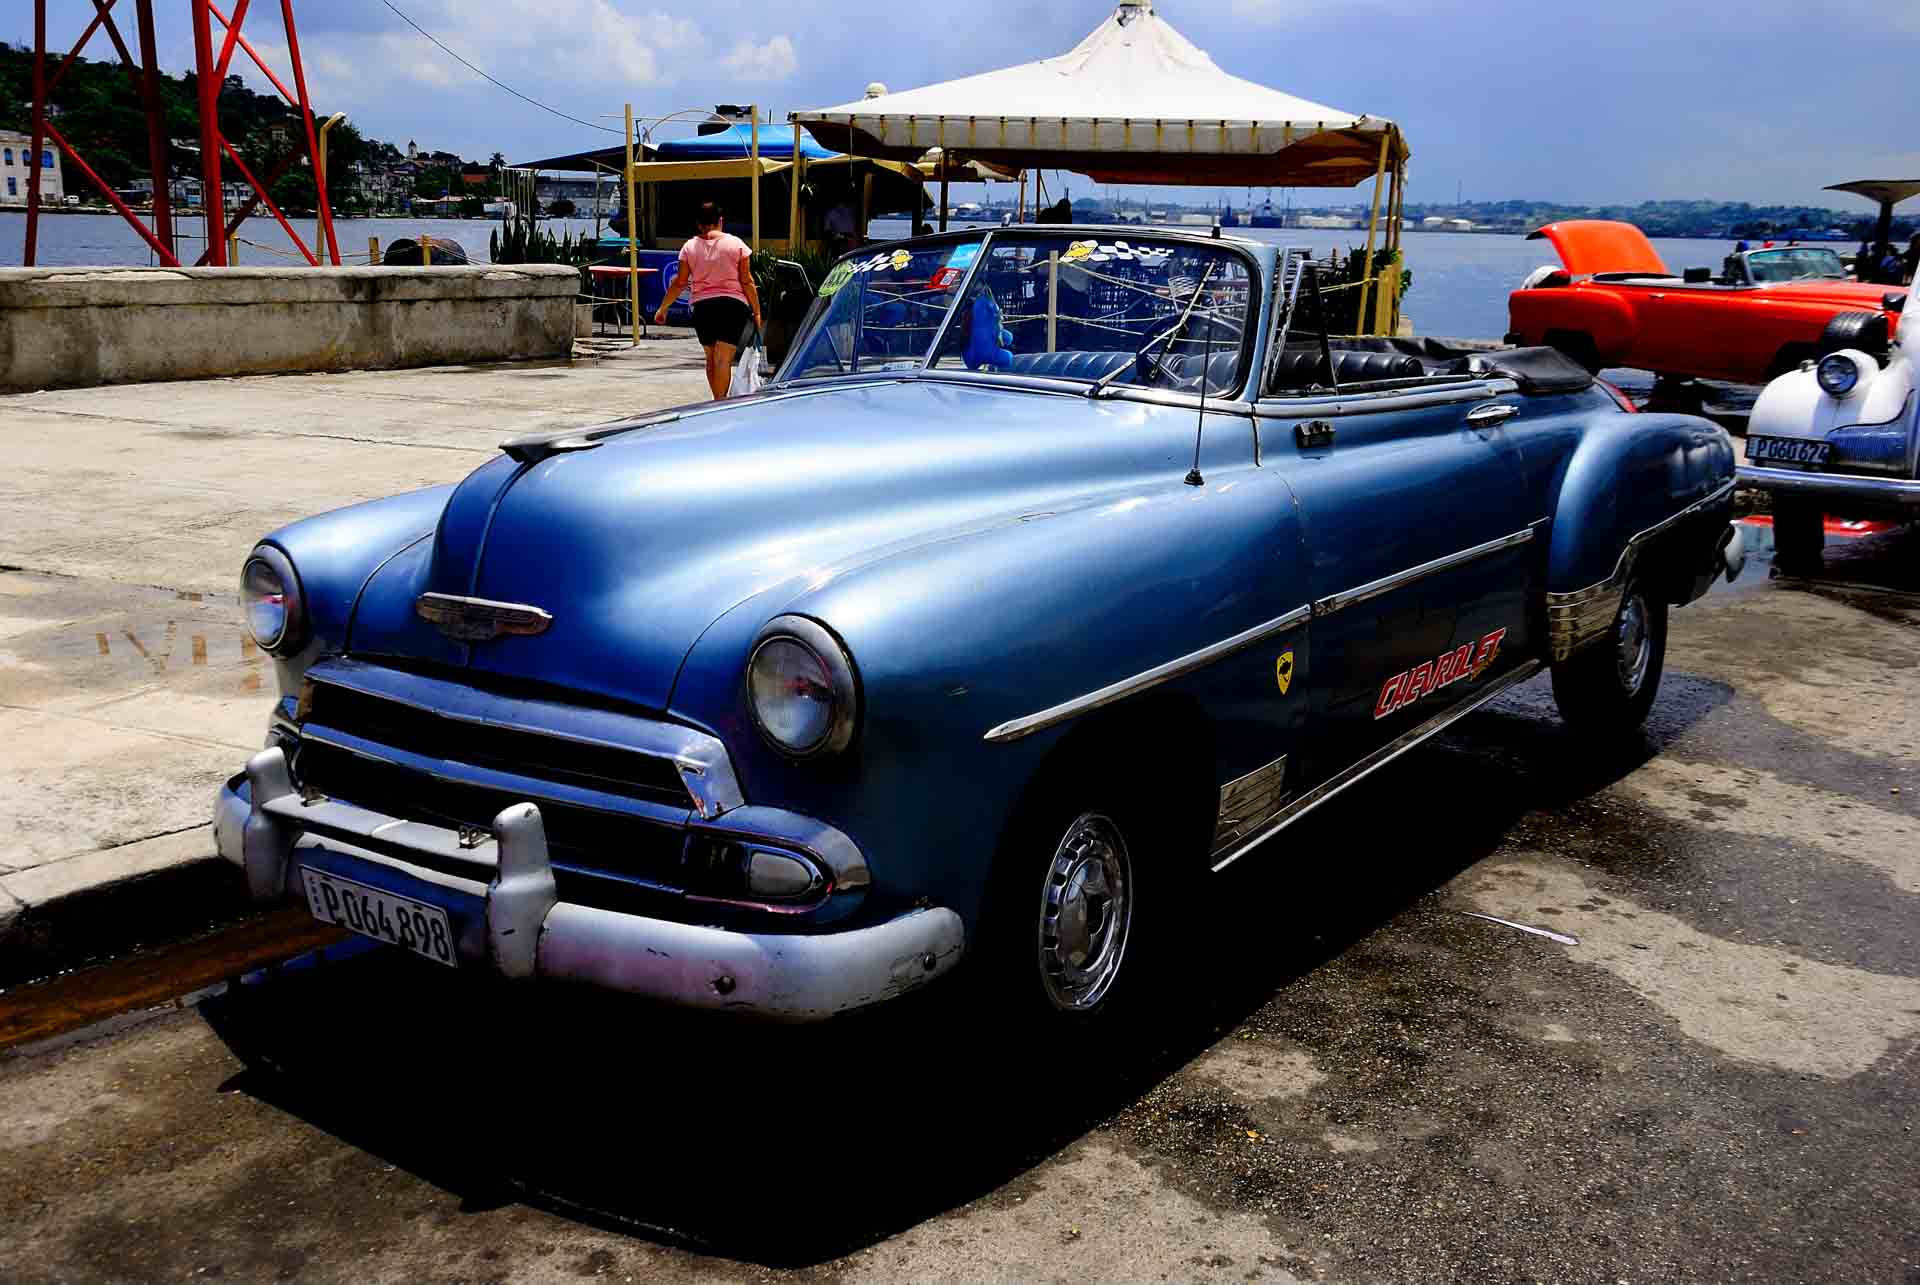 Havana Cuba Vintage Car 7, havana, cuba, pescart, photo blog, travel blog, blog, photo travel blog, enrico pescantini, pescantini